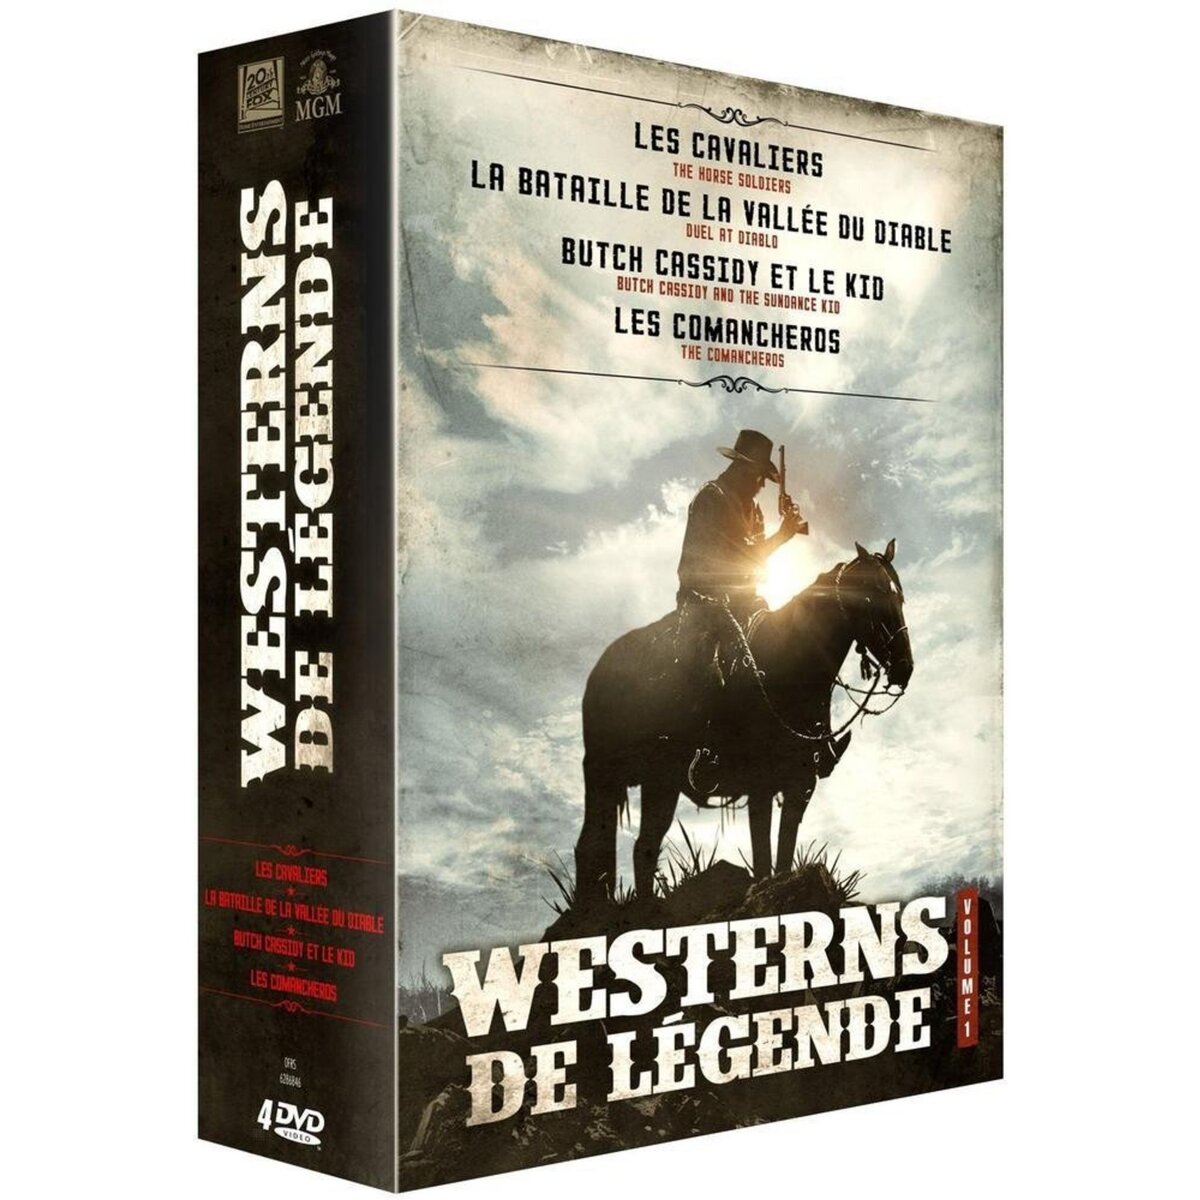 Westerns de légende - Vol. 1 : Les cavaliers + La bataille de la vallée du diable + Butch Cassidy et le Kid + Comancheros